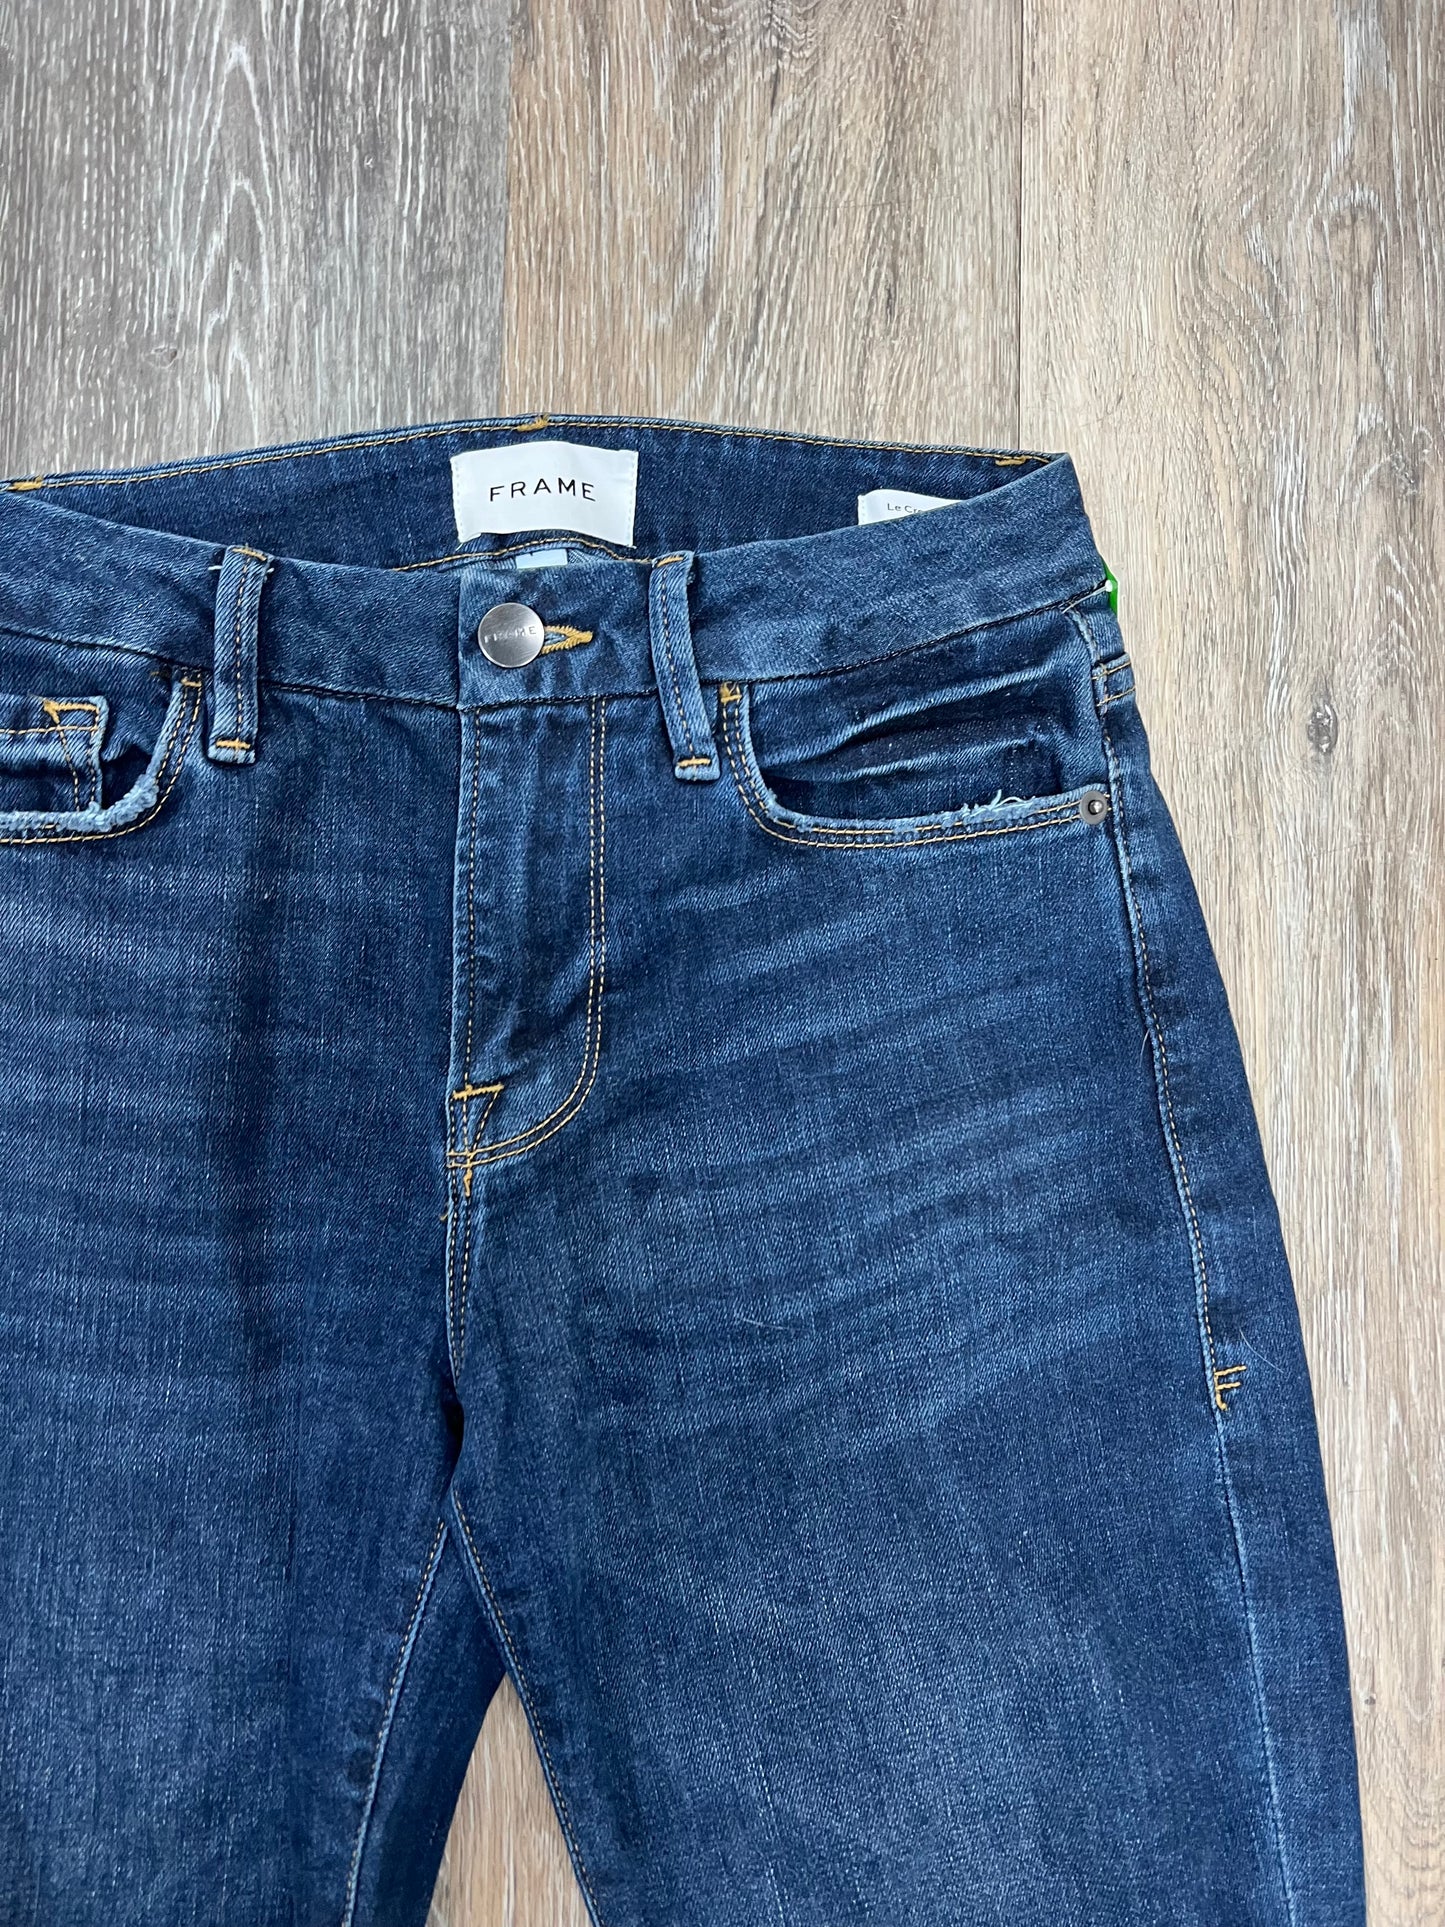 Jeans Designer By Frame  Size: 0/24